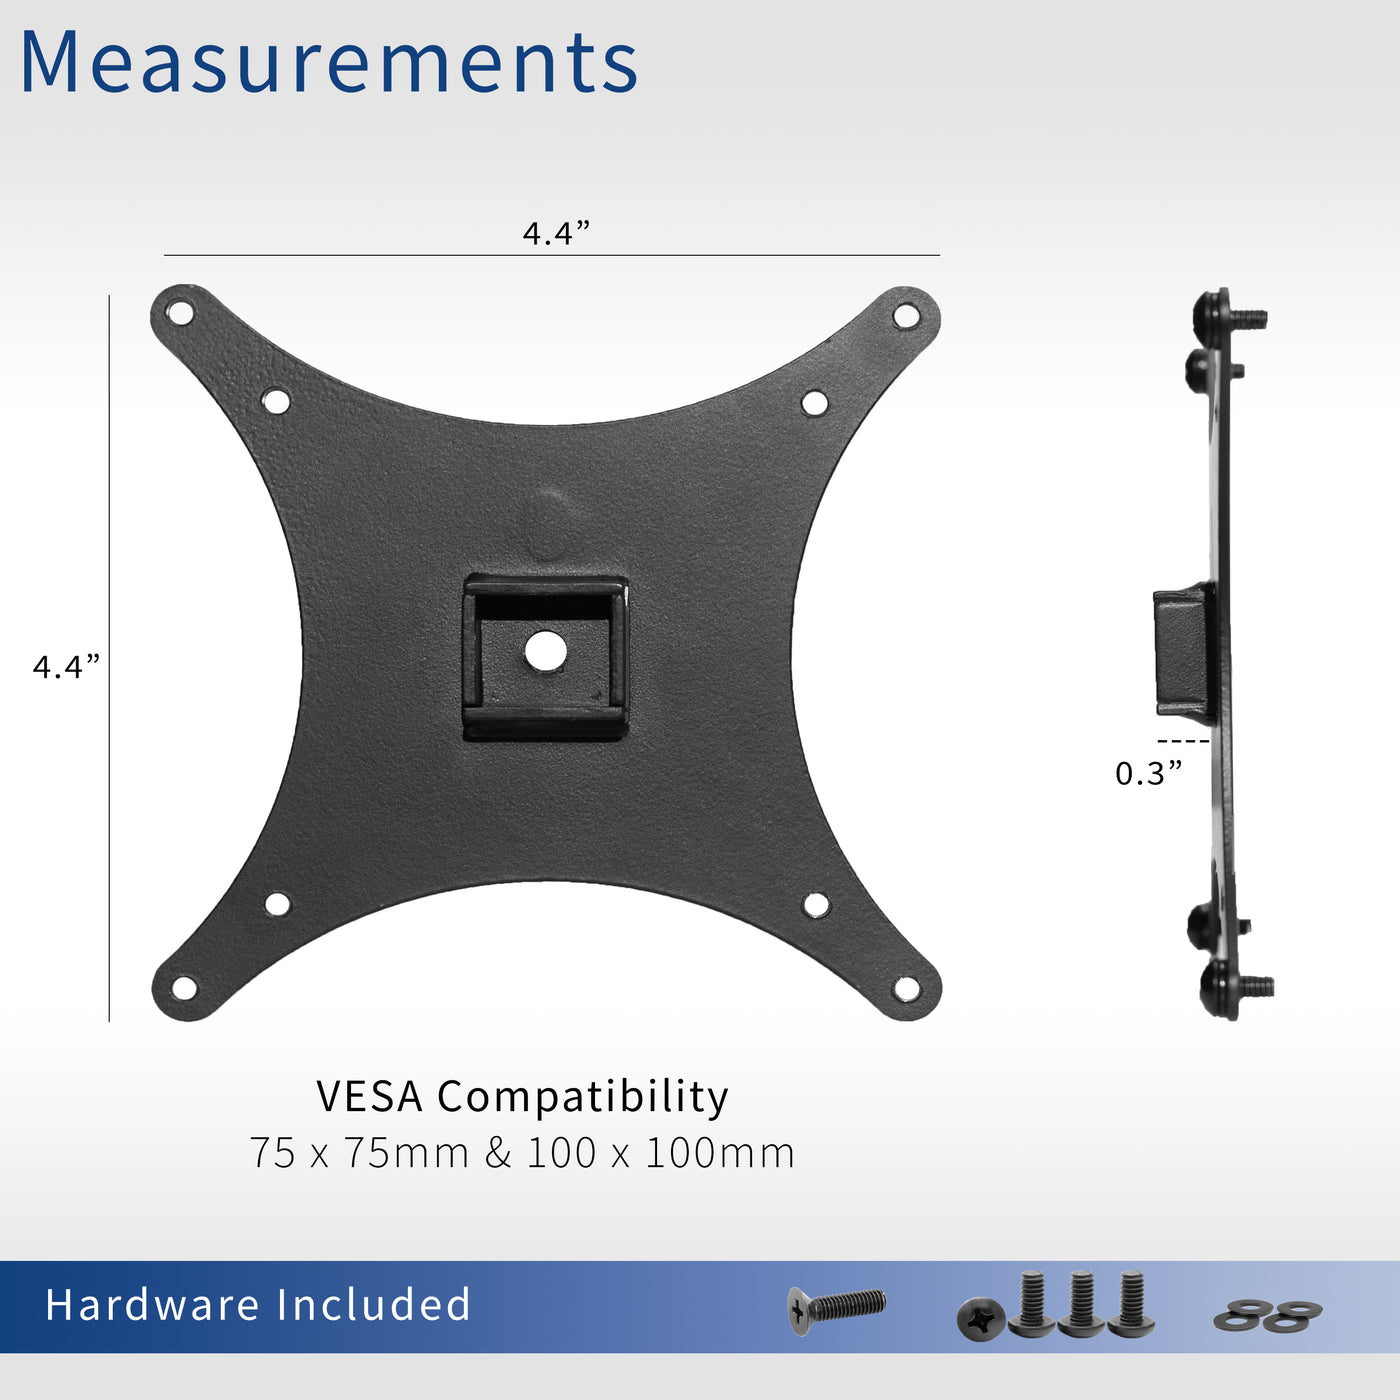 VESA Adapter Designed for Sceptre C30 Monitor